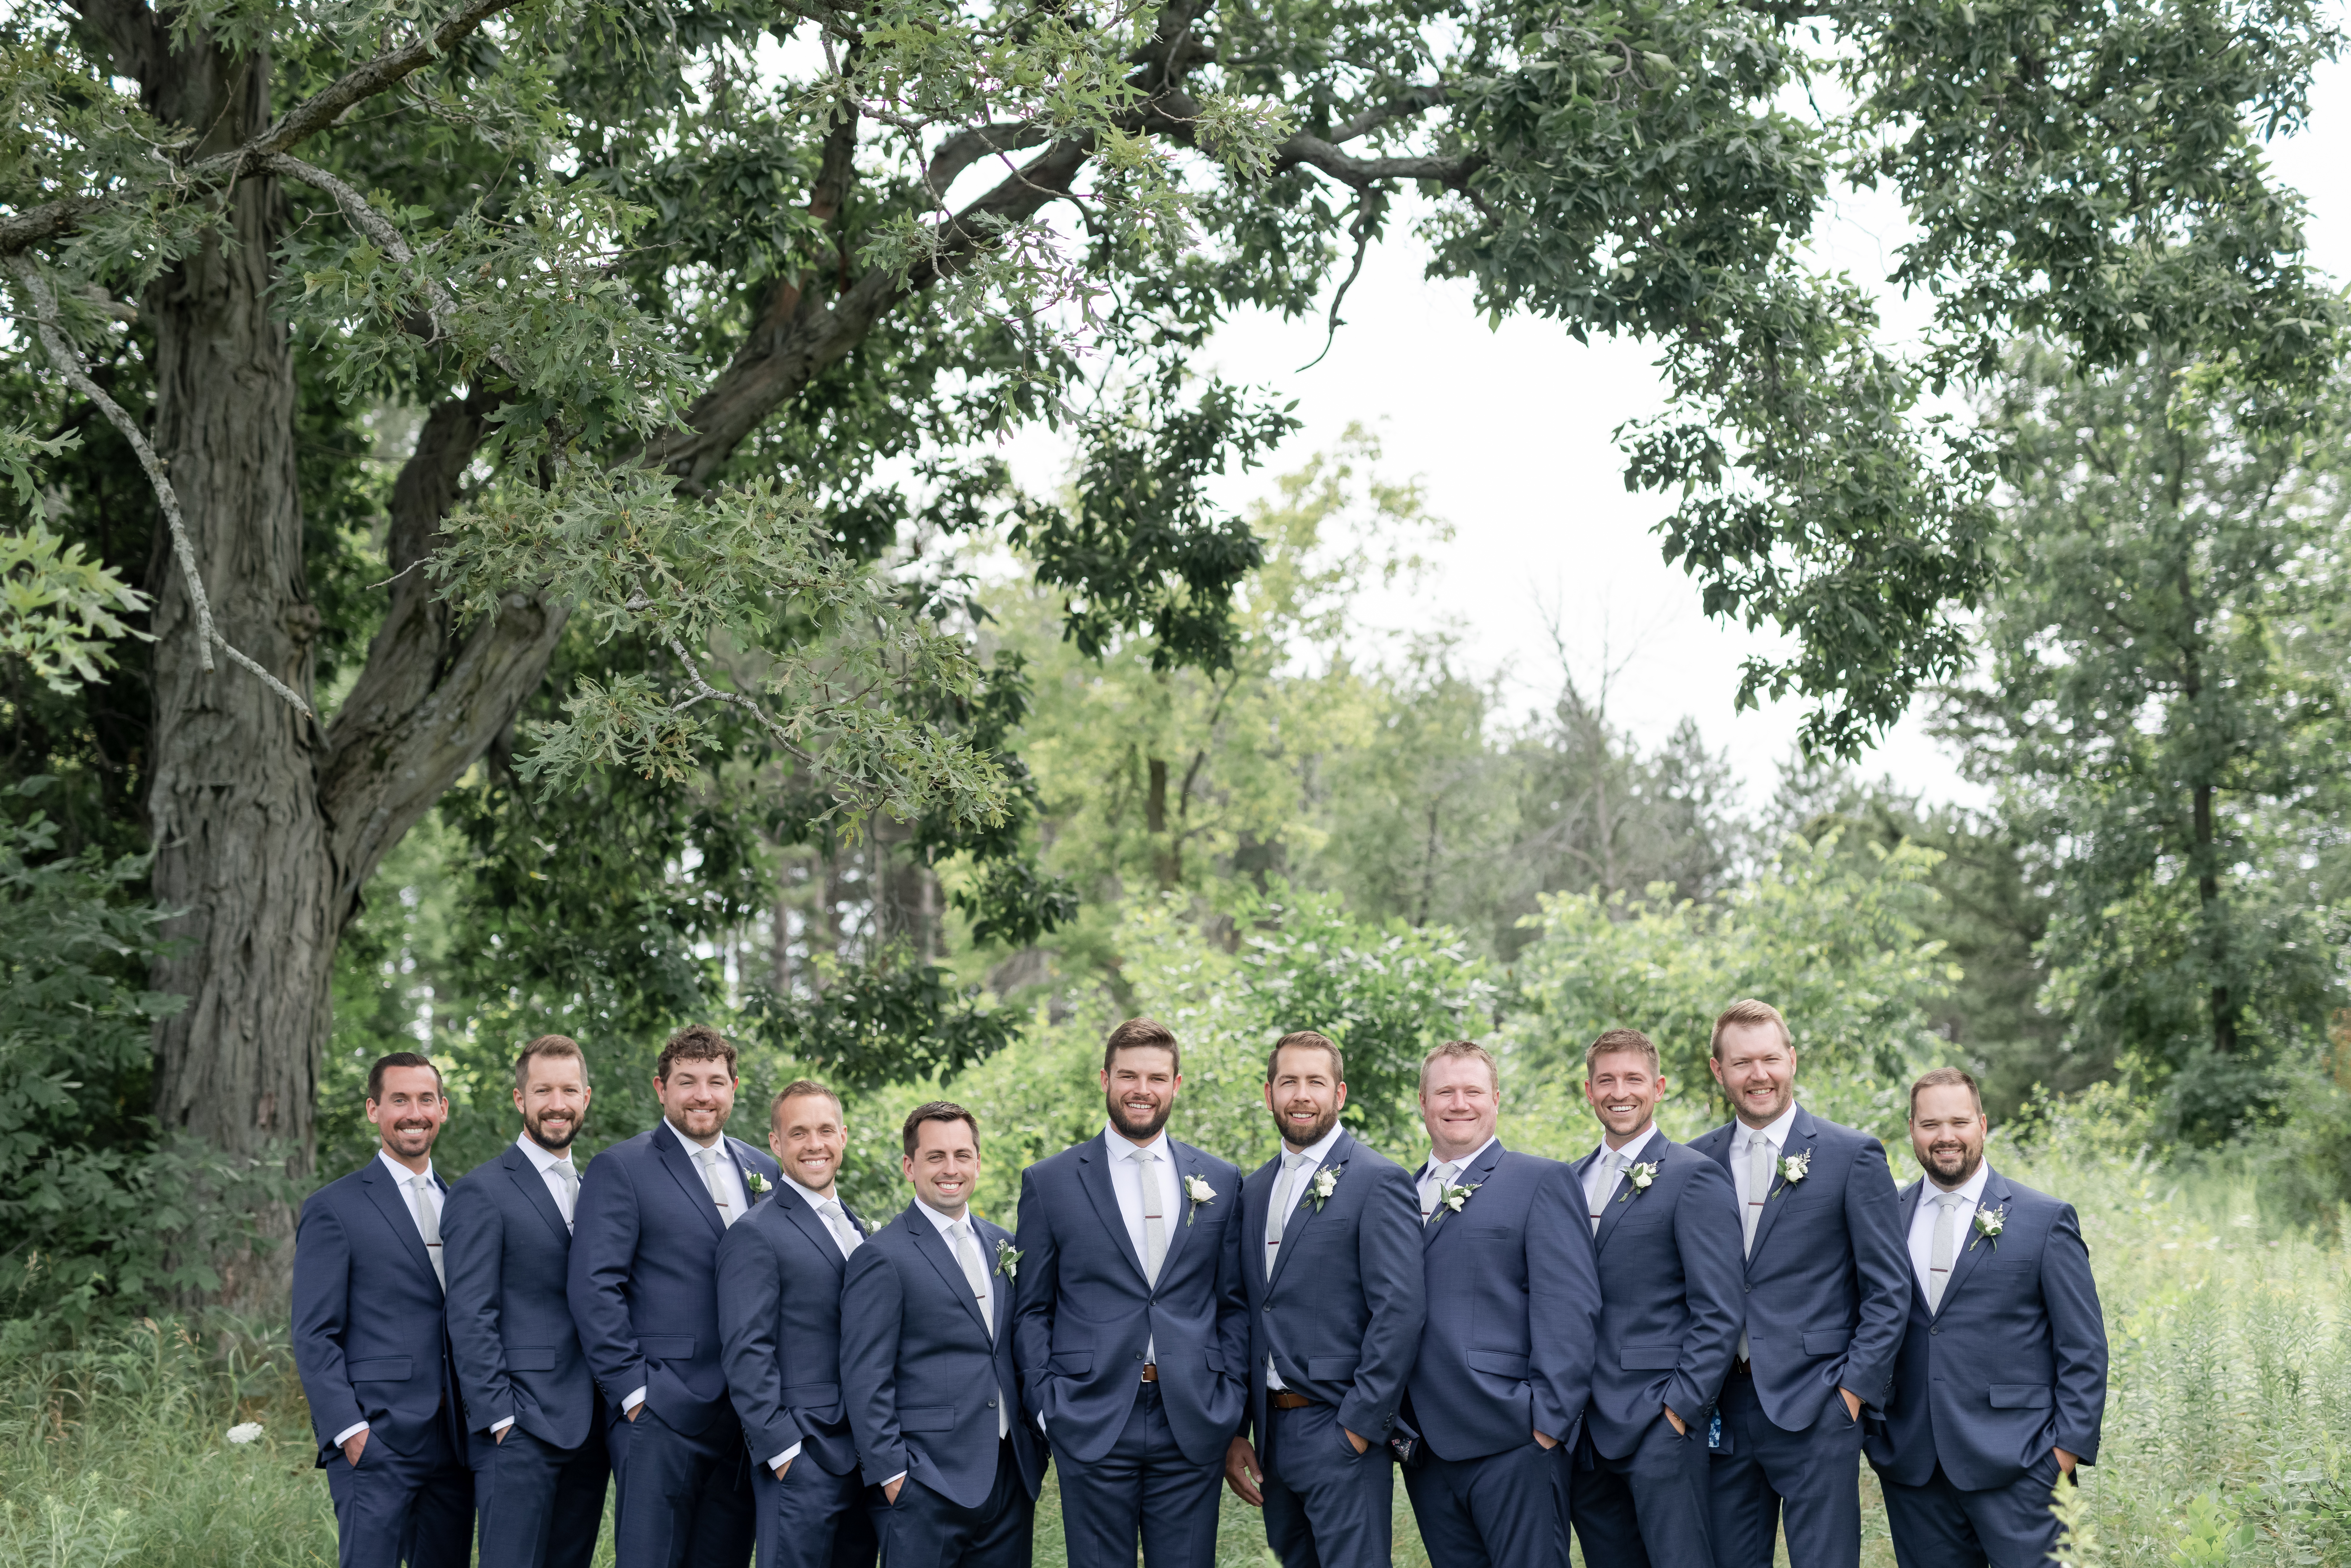 groomsmen-navy-suits